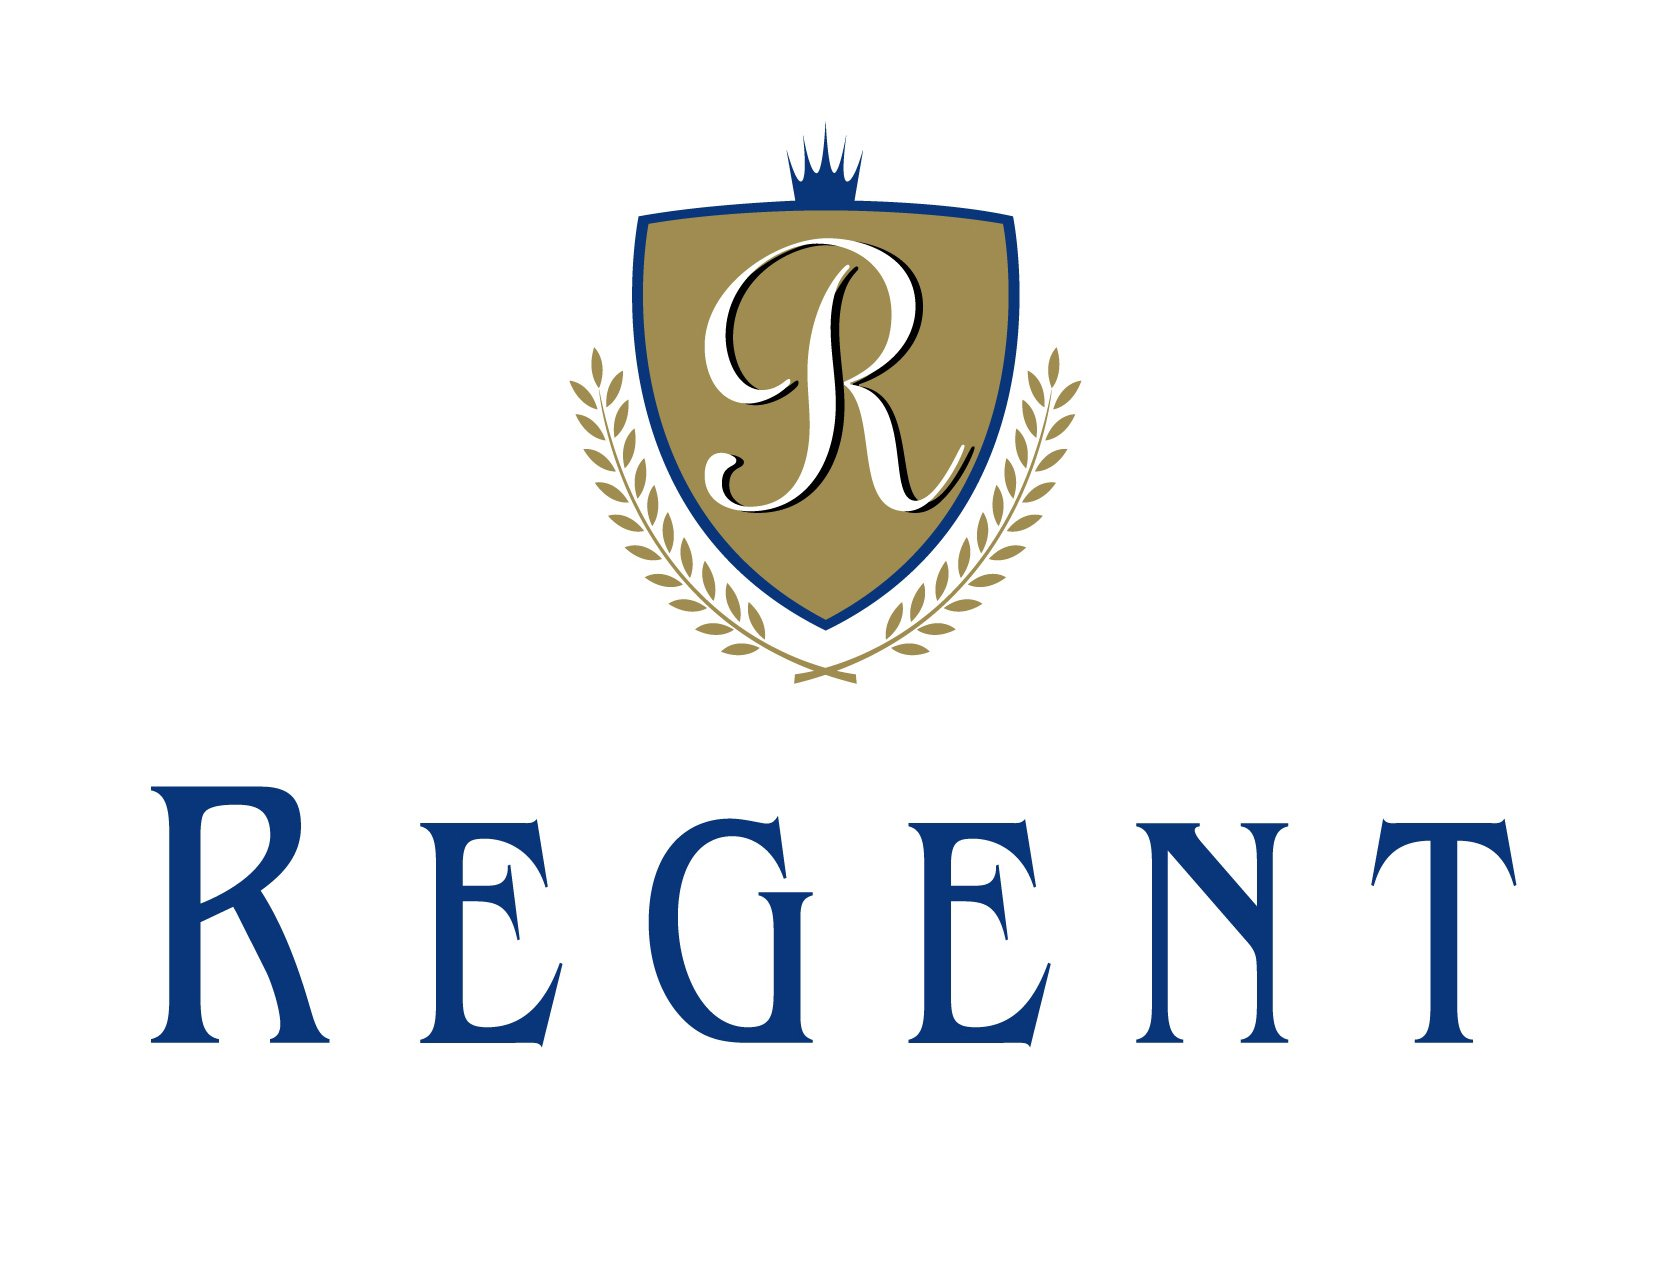 Trademark Logo REGENT